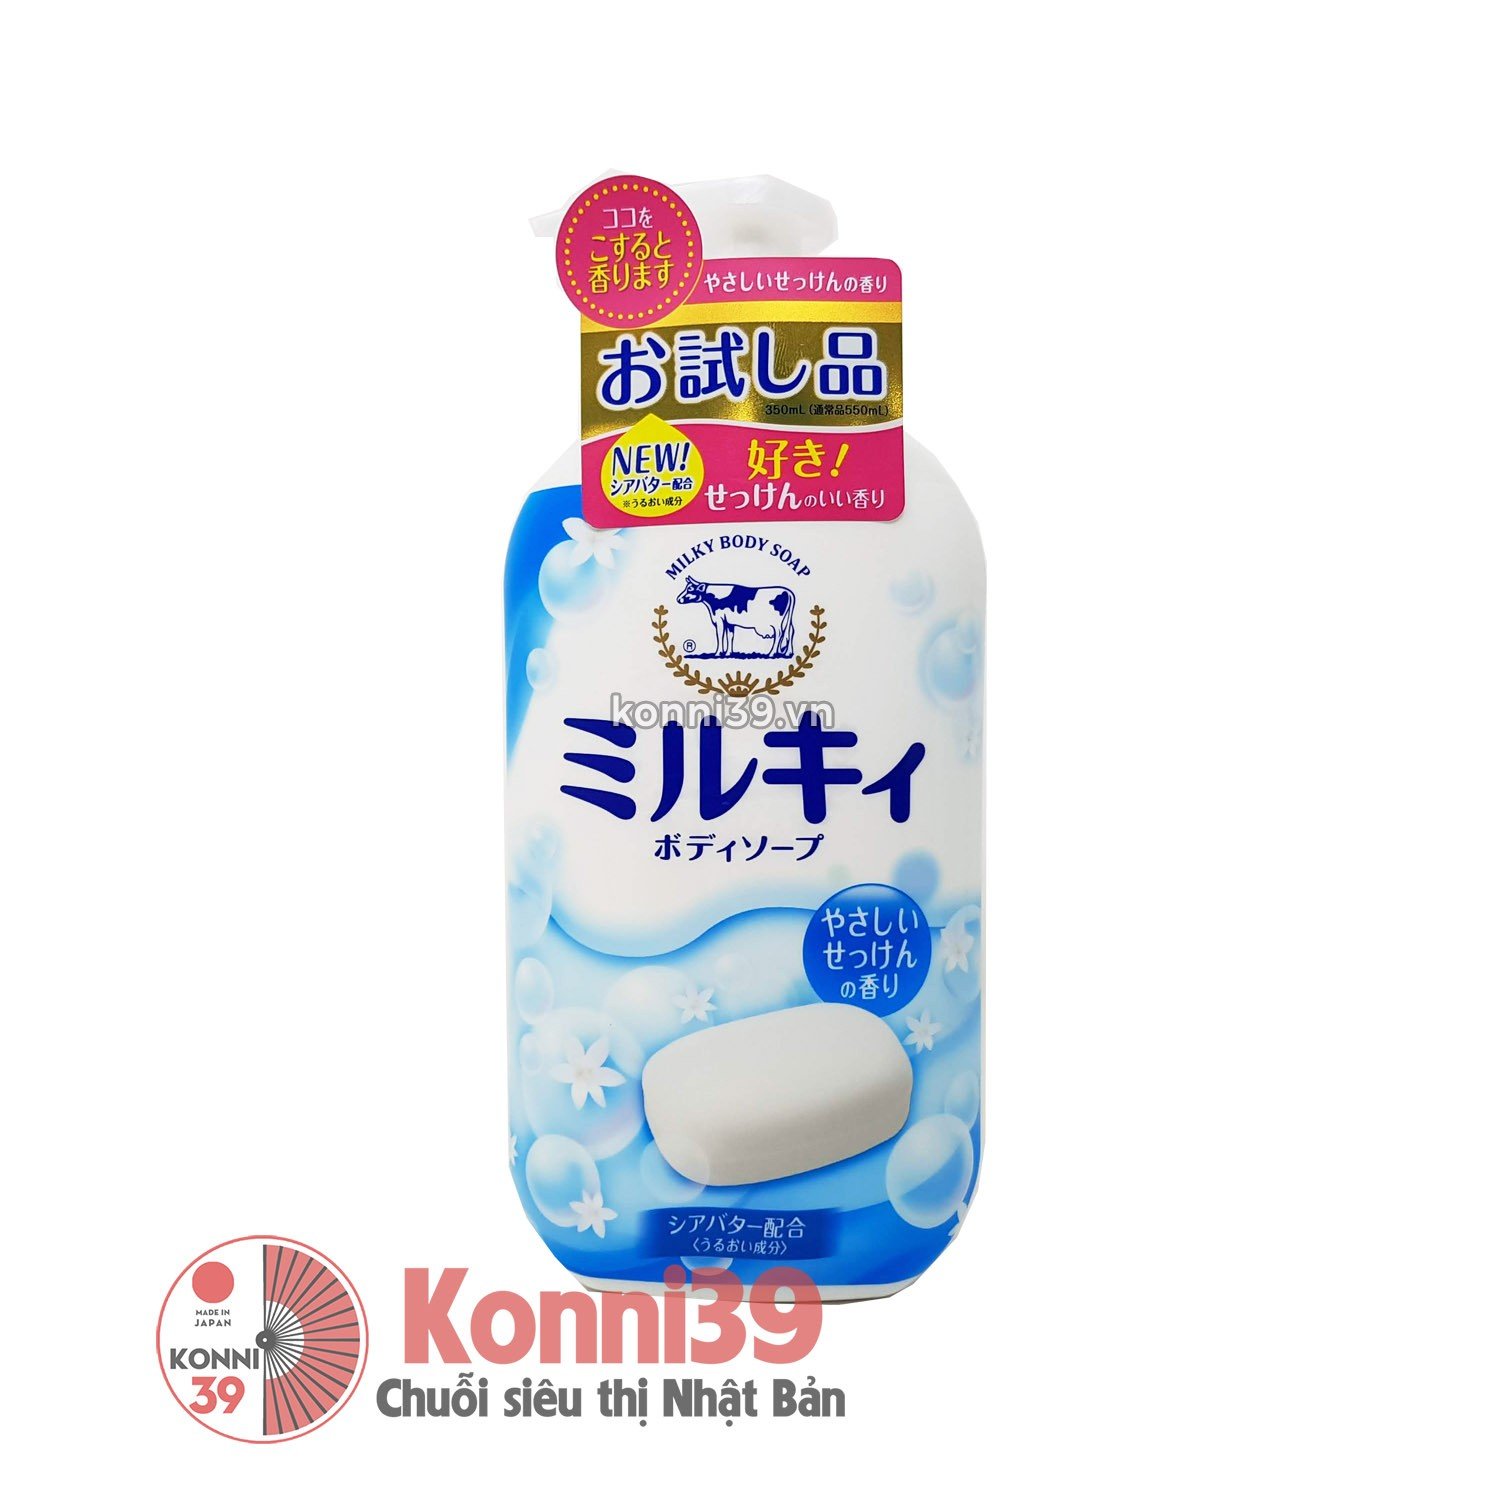 Sữa tắm Milky Body Soap trắng dưỡng ẩm cho da 350ml - Hương xà phòng